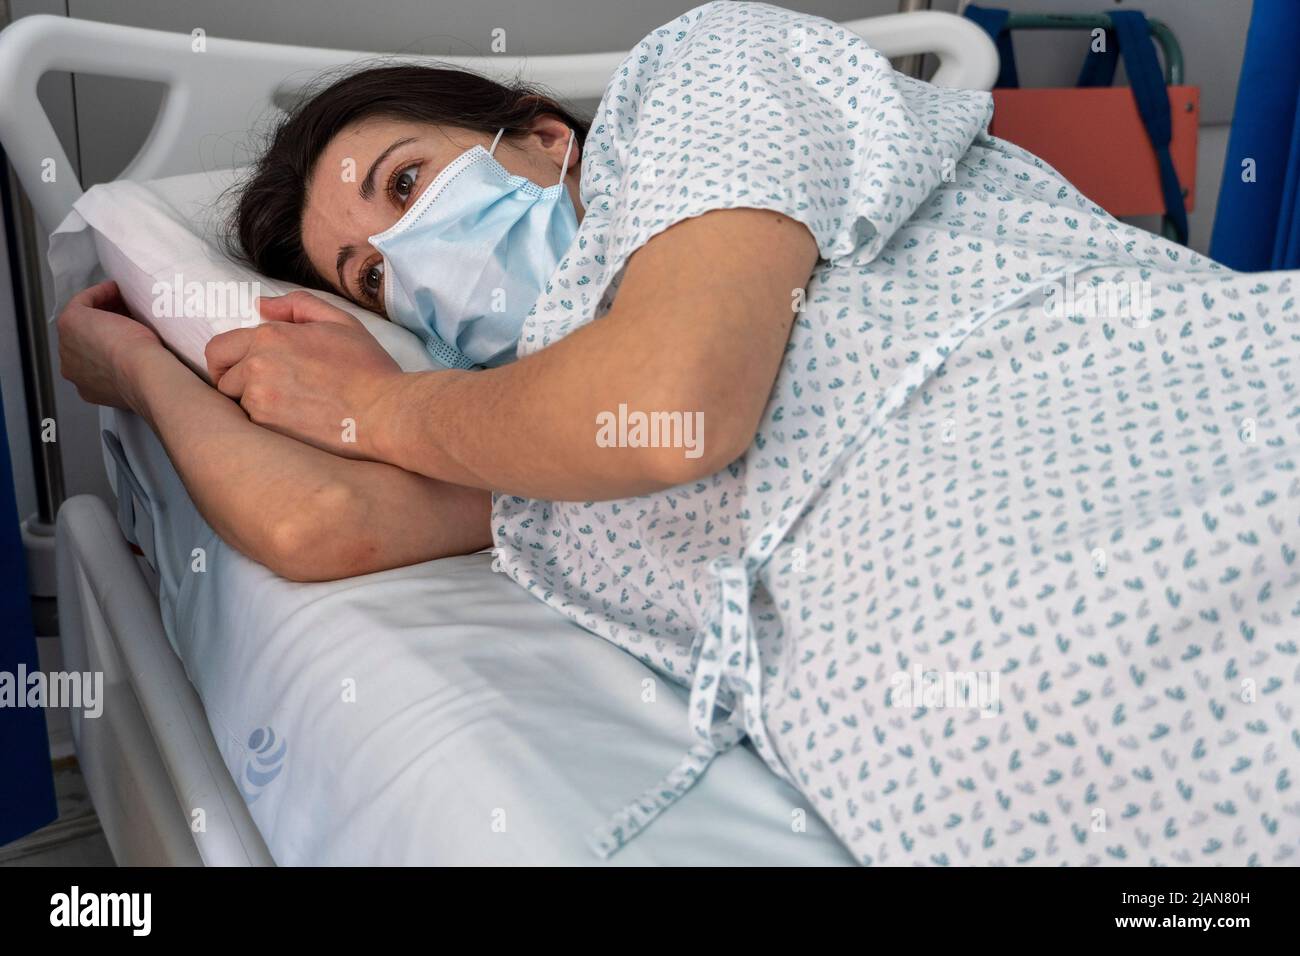 Une jeune femme hospitalisée portant un masque facial dans un lit de service hospitalier Banque D'Images